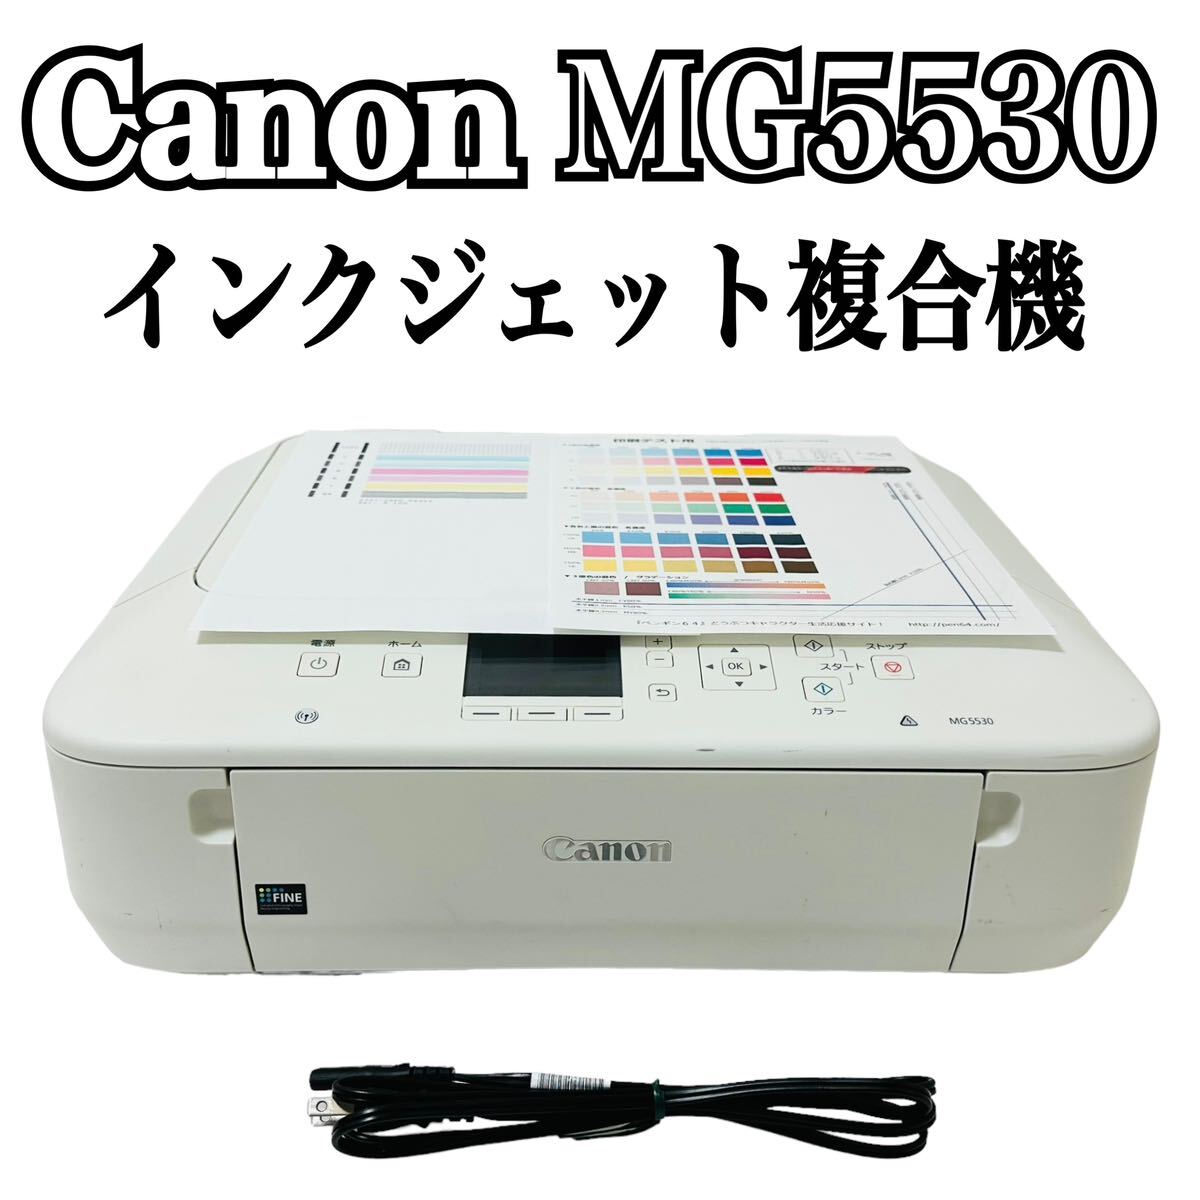 ★ 人気商品 ★ Canon キャノン インクジェットプリンター複合機 PIXUS ピクサス MG5530 WH ホワイト プリンター 複合機 インクジェット_画像1